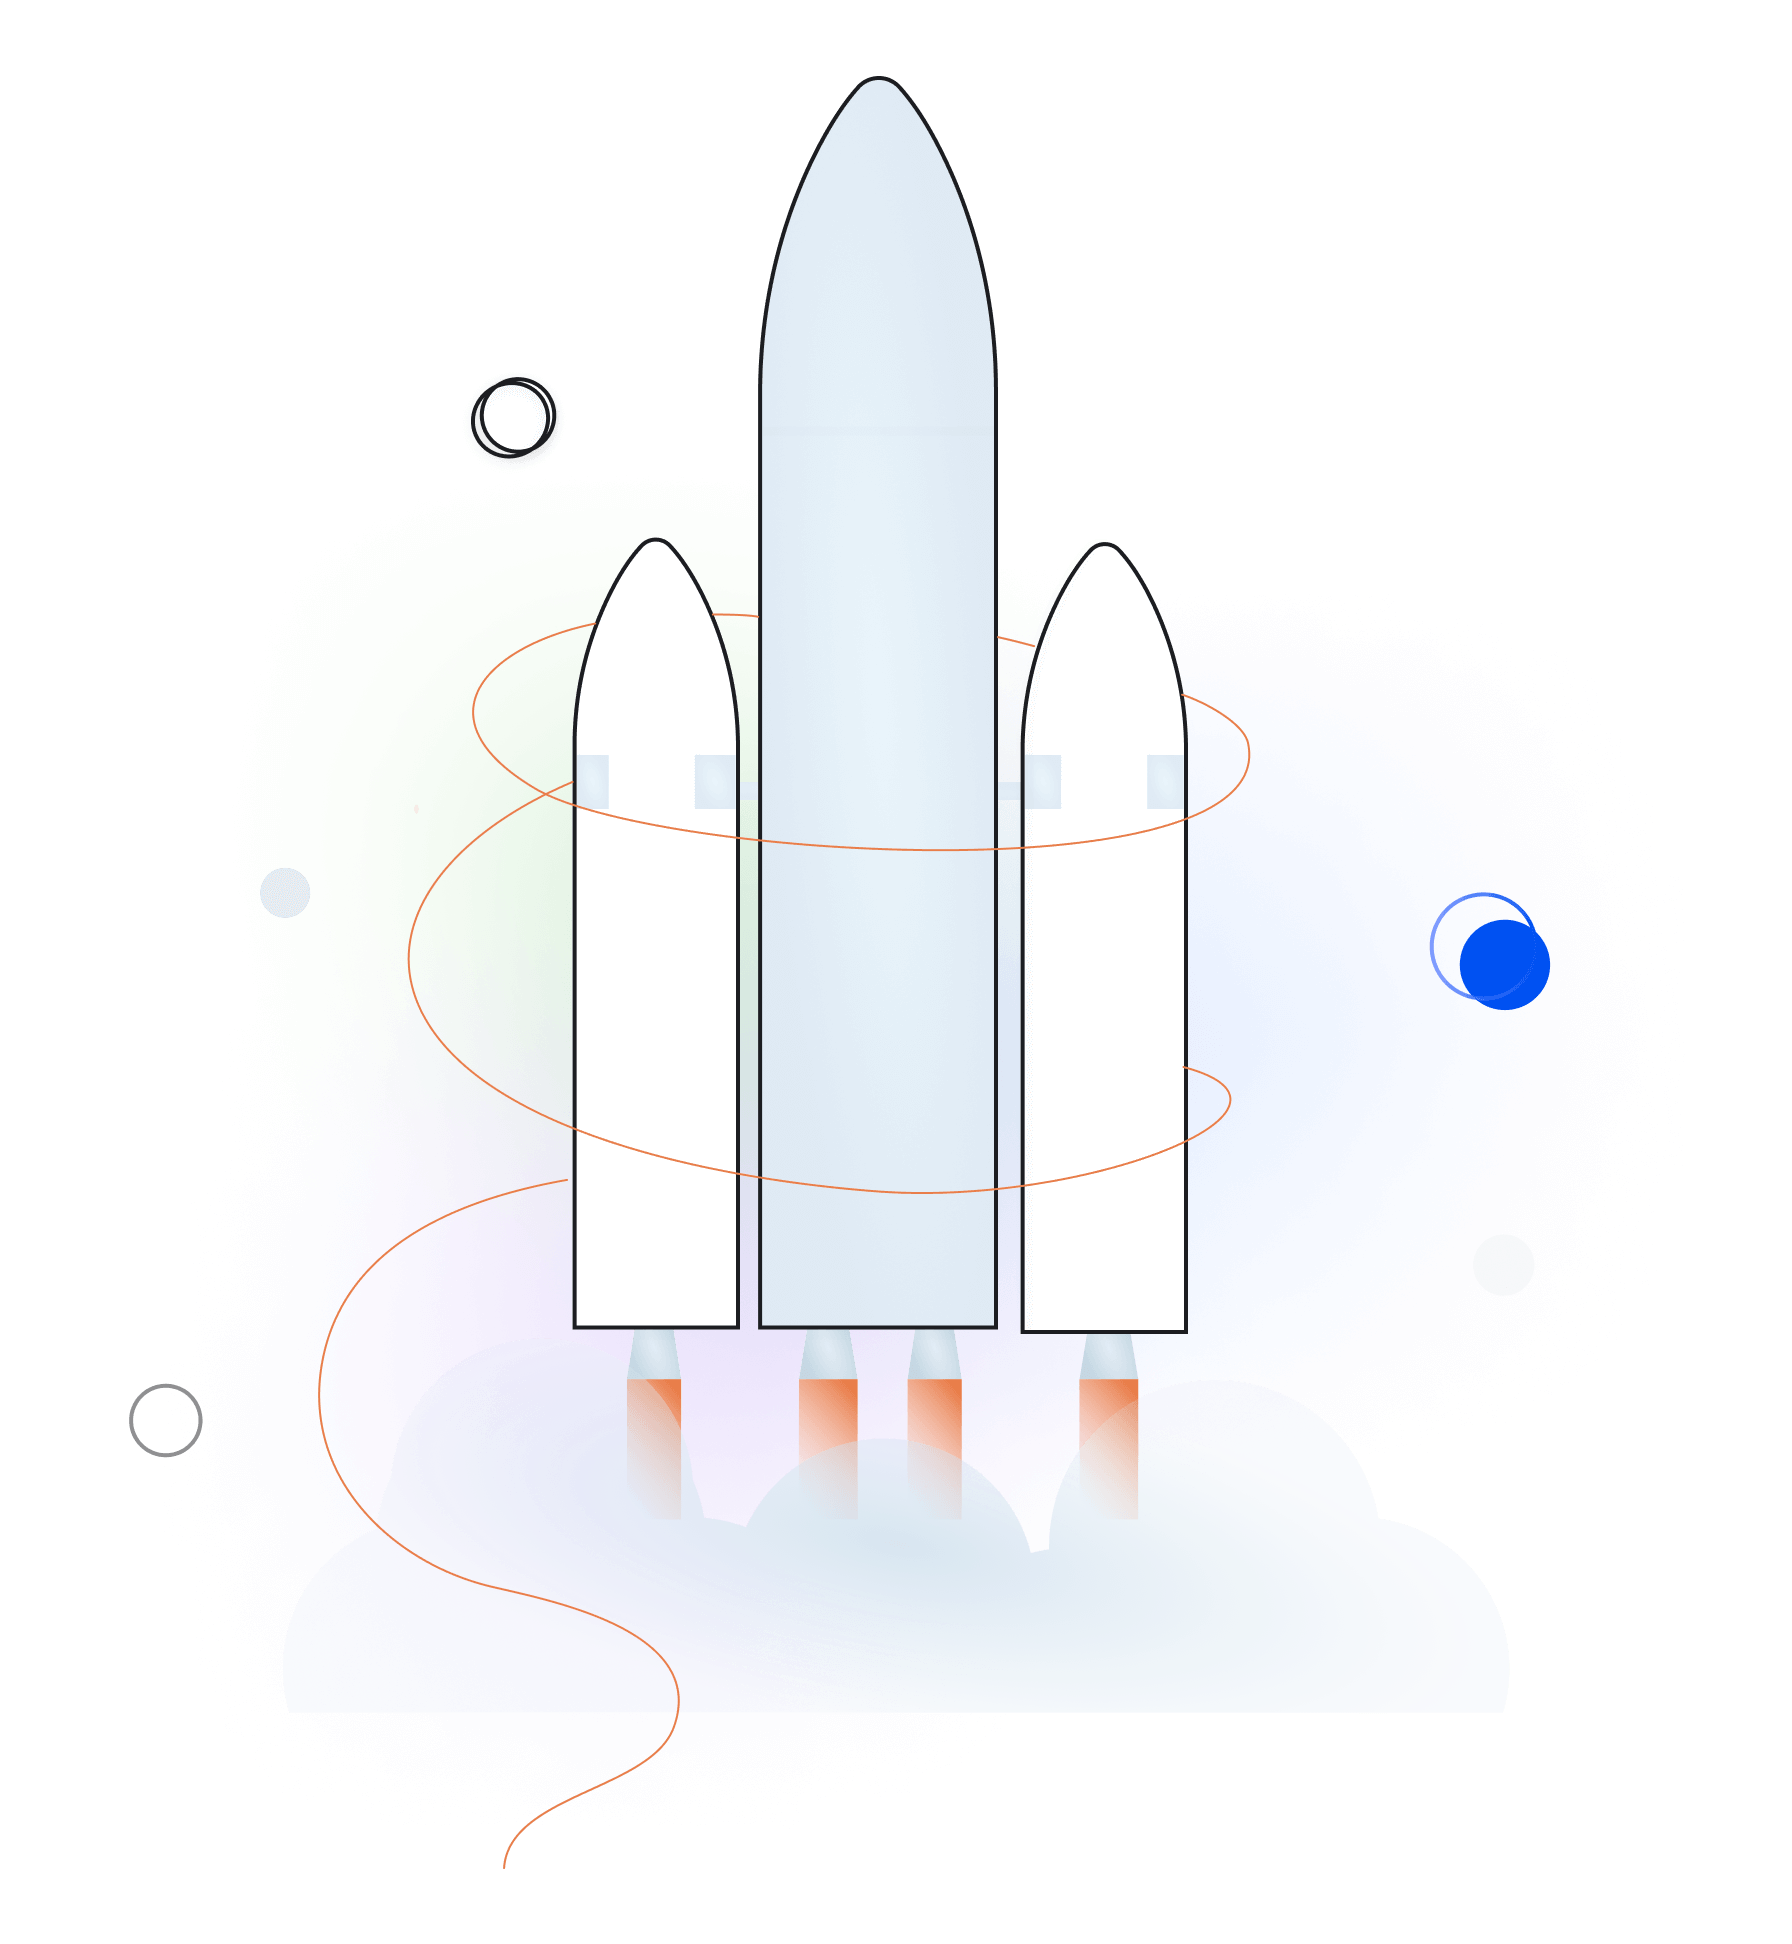 Rocket Launch with GUTJAHR